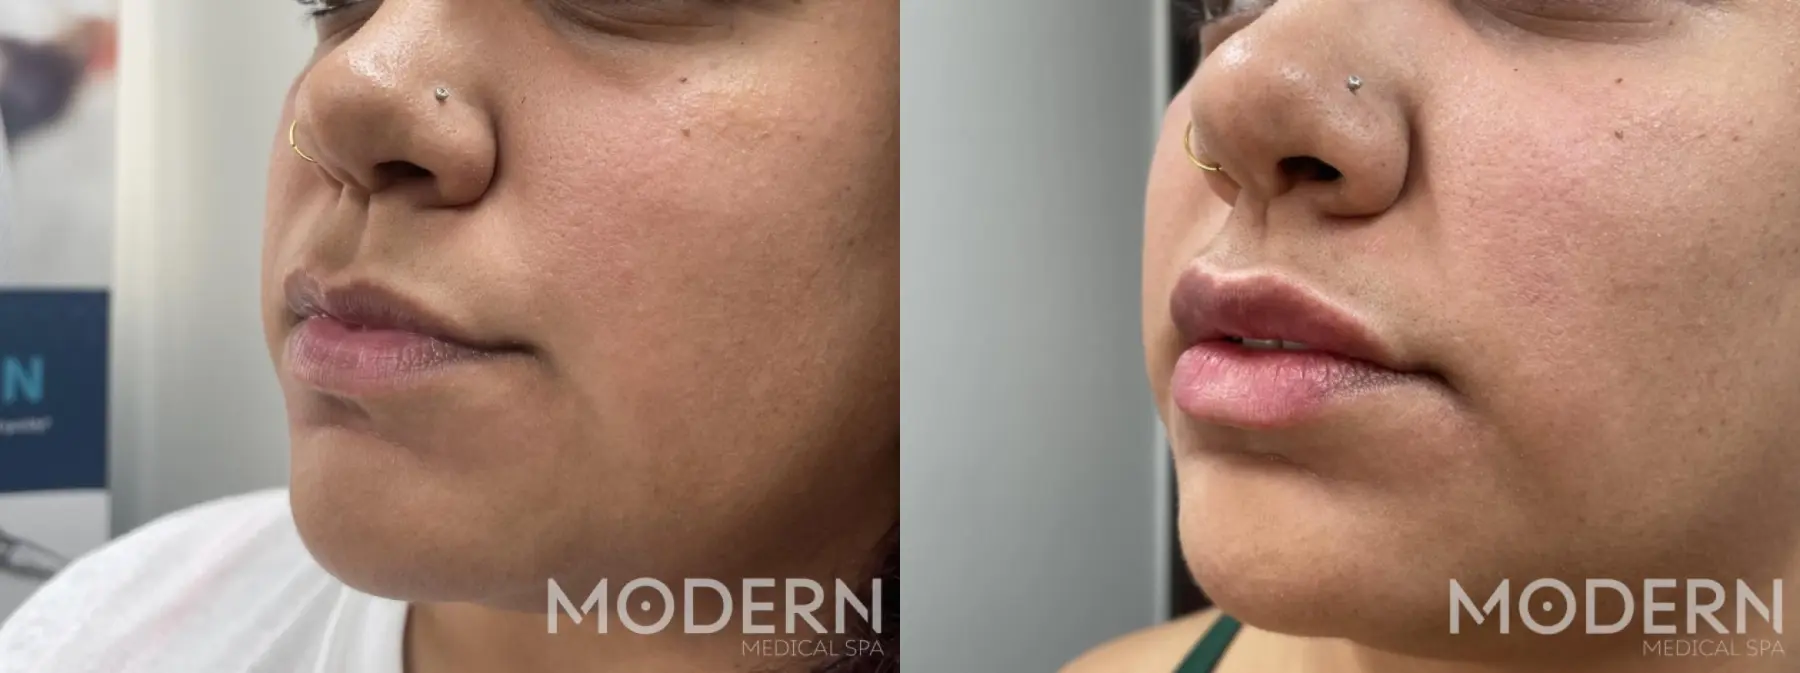 use dermal lip filler restylane kysse fior fuller lips - Before and After